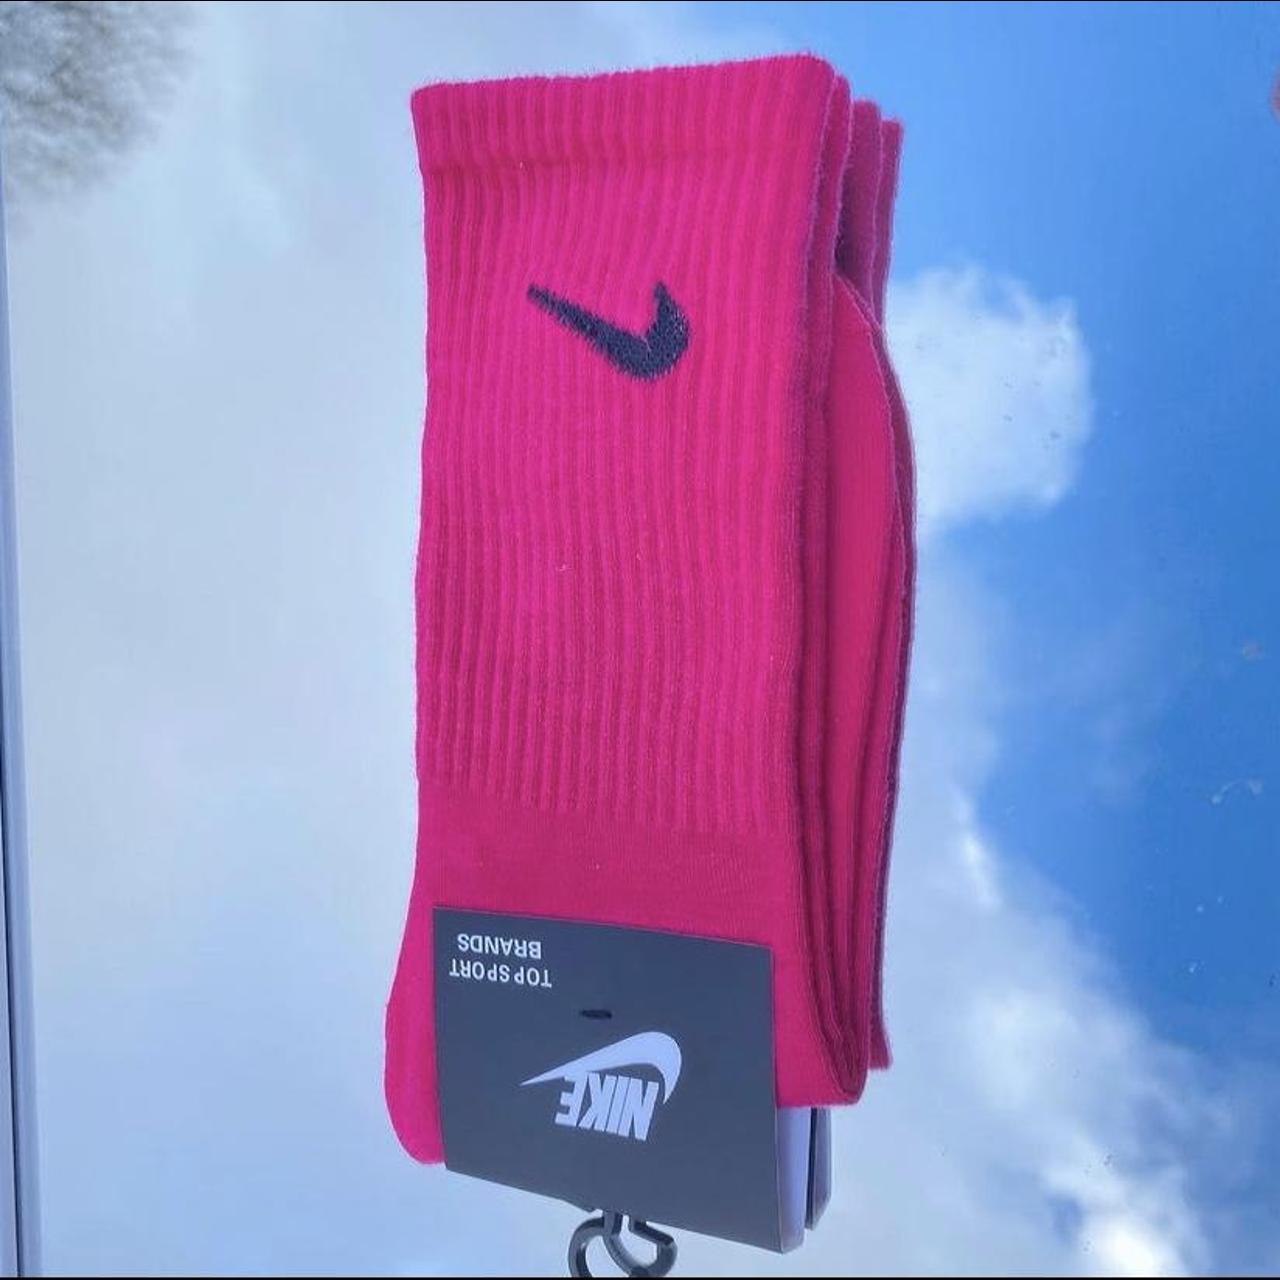 Hot Pink Nike Socks 🧦 ~ 🥵🌸🐷🌺💕 We have a range of... - Depop